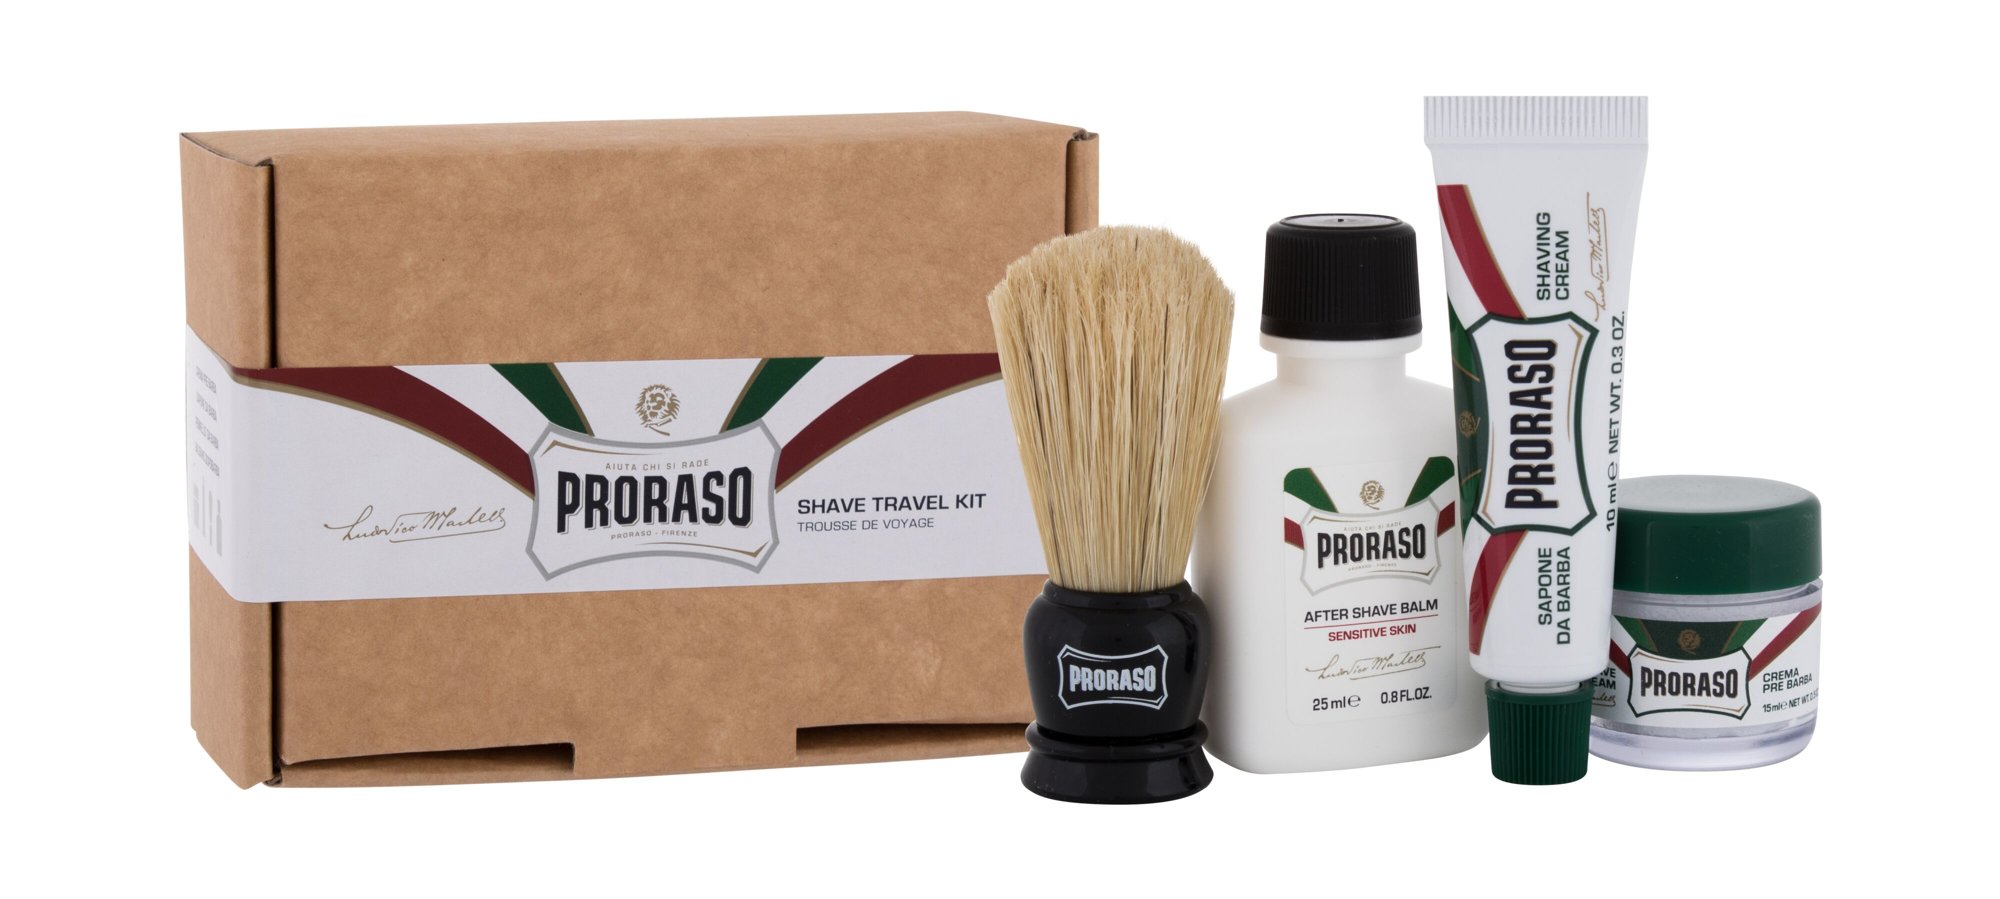 PRORASO Shave Travel Kit